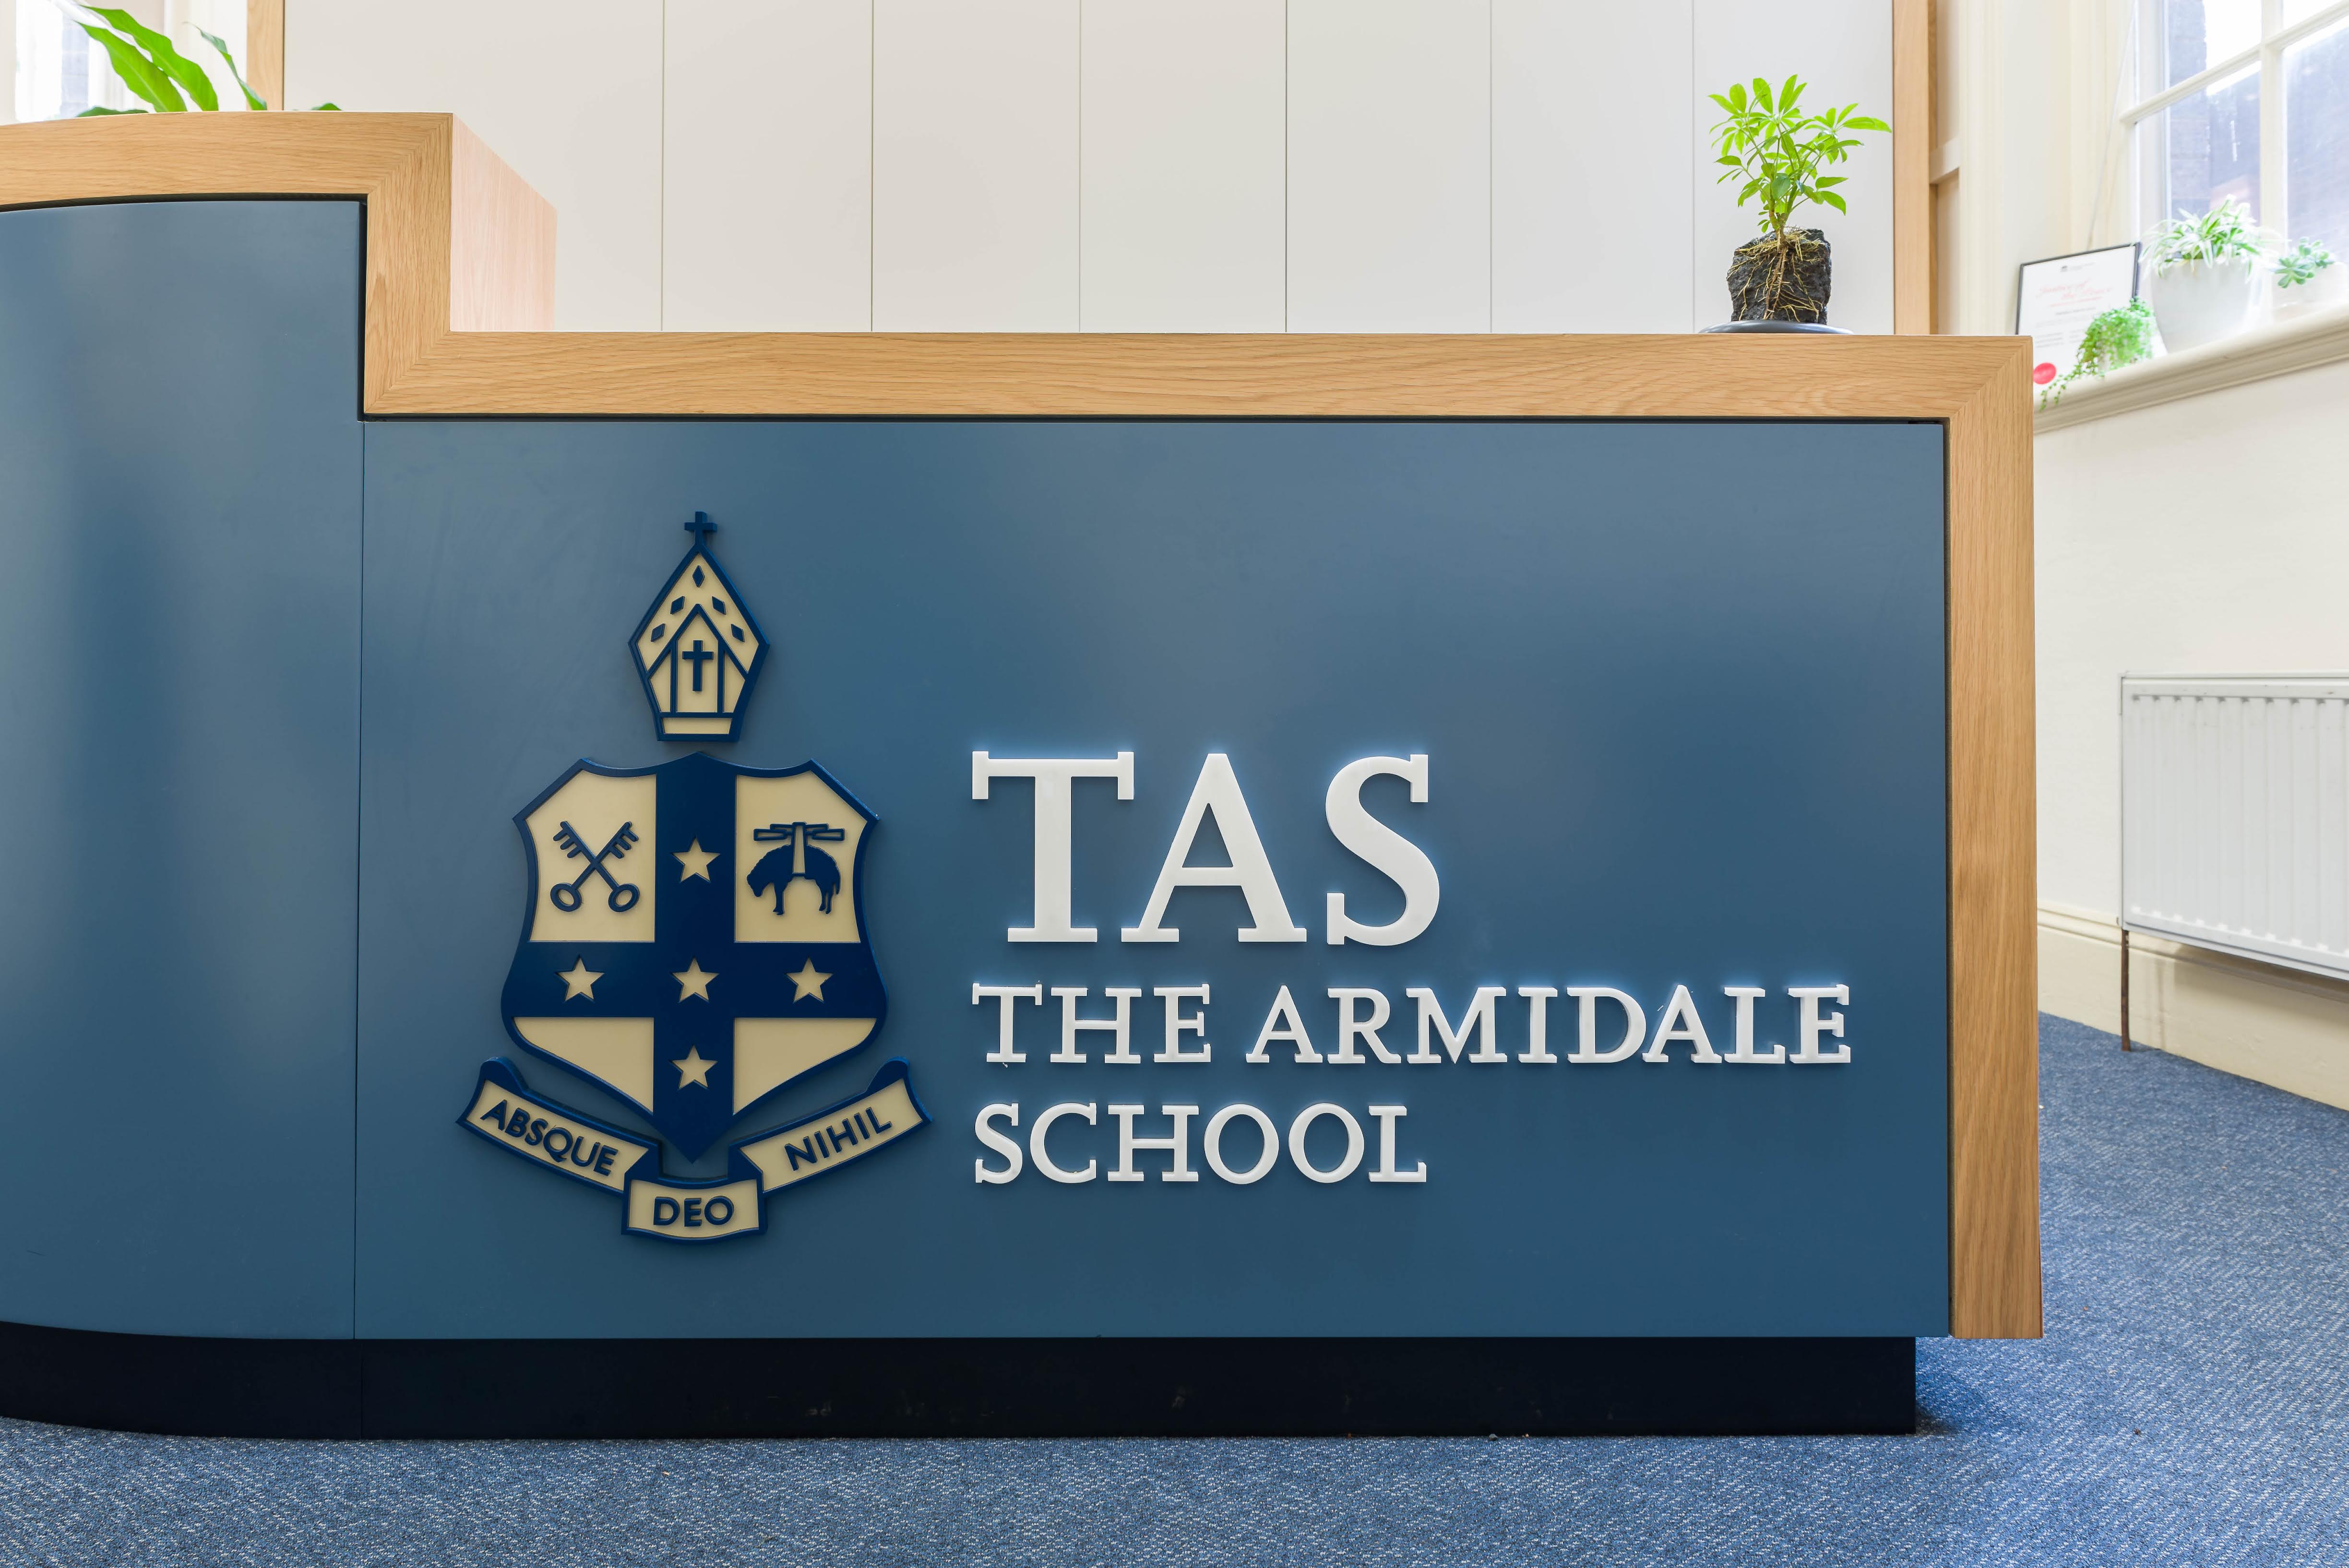 The Armidale School (TAS)